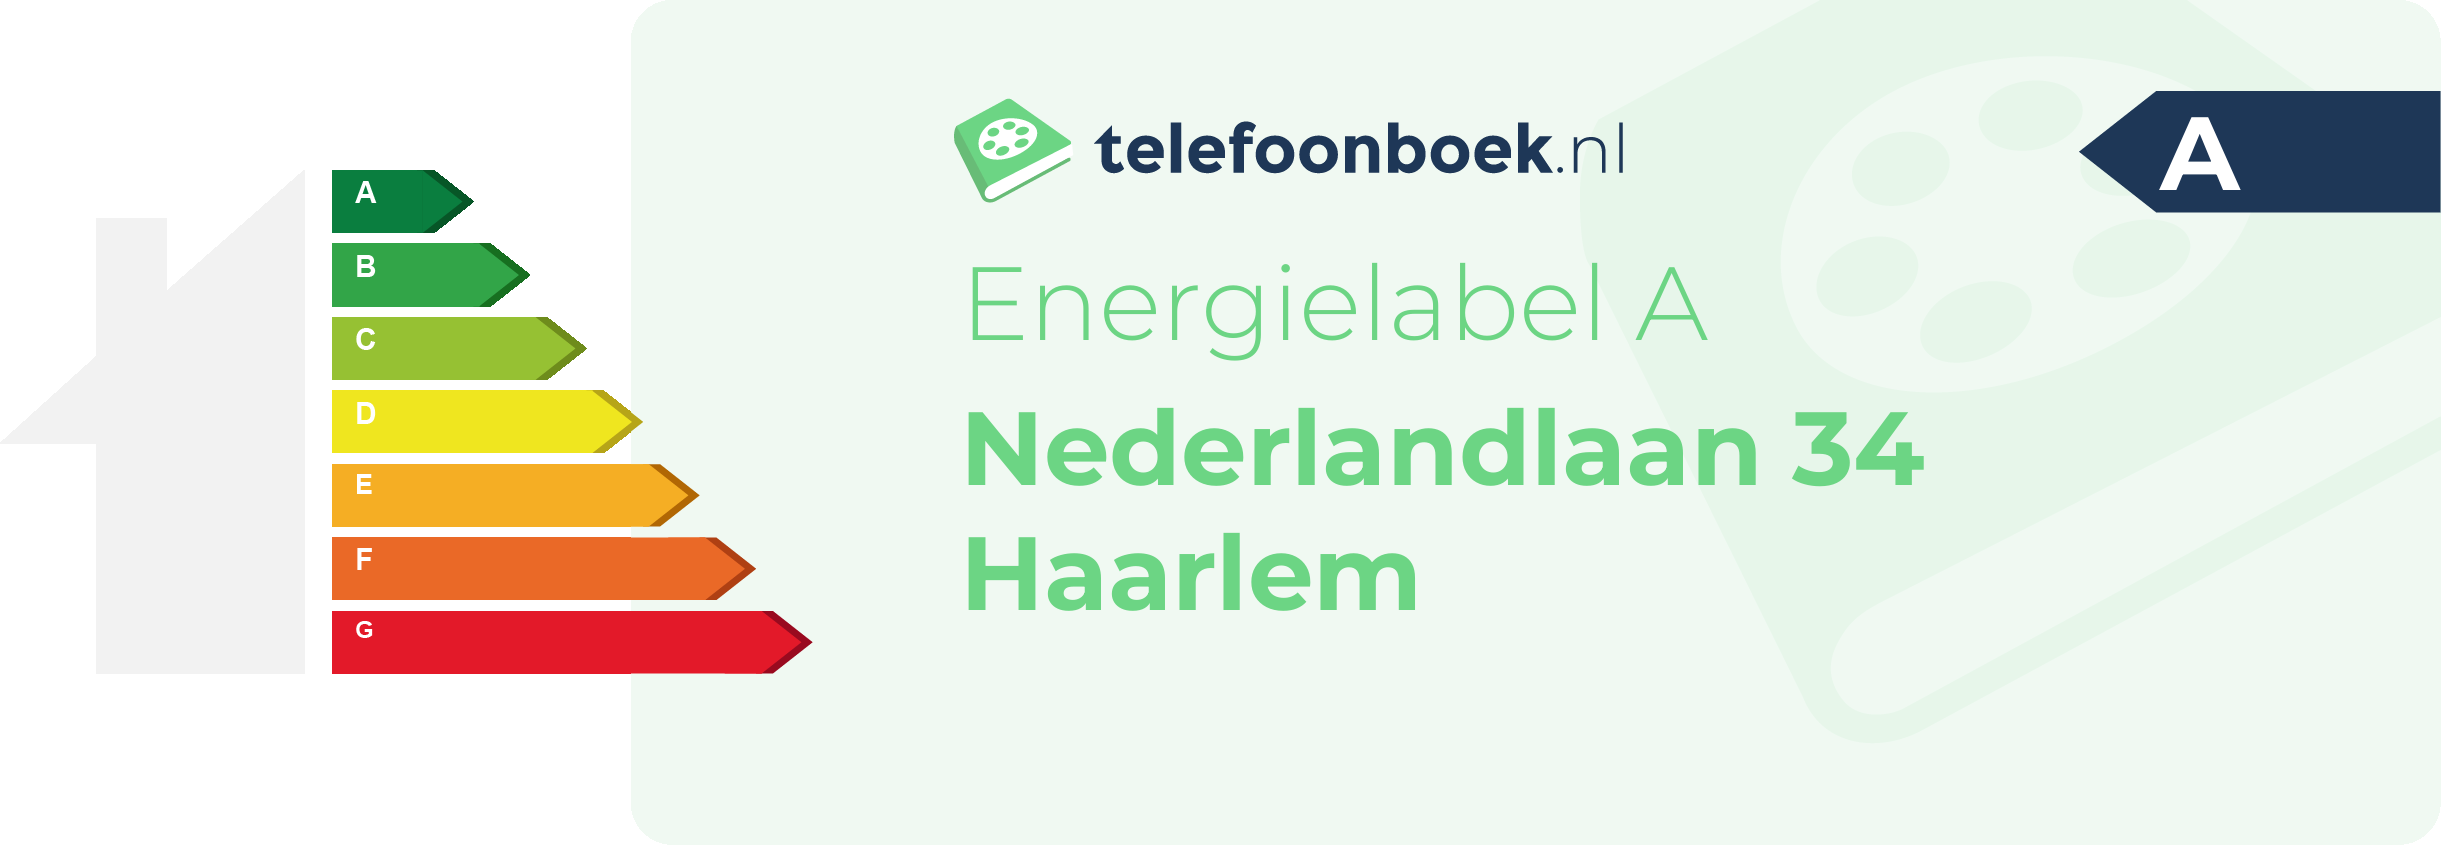 Energielabel Nederlandlaan 34 Haarlem